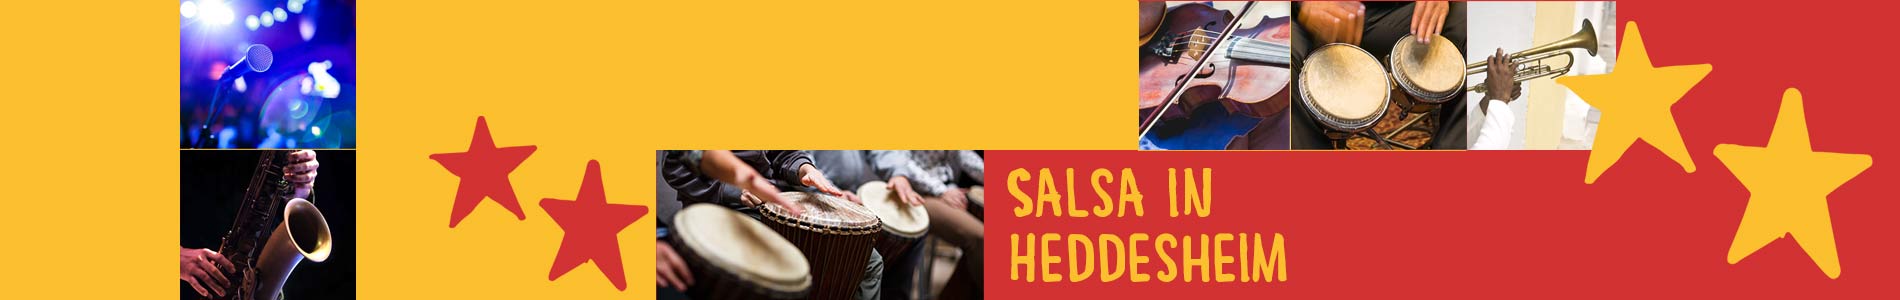 Salsa in Heddesheim – Salsa lernen und tanzen, Tanzkurse, Partys, Veranstaltungen